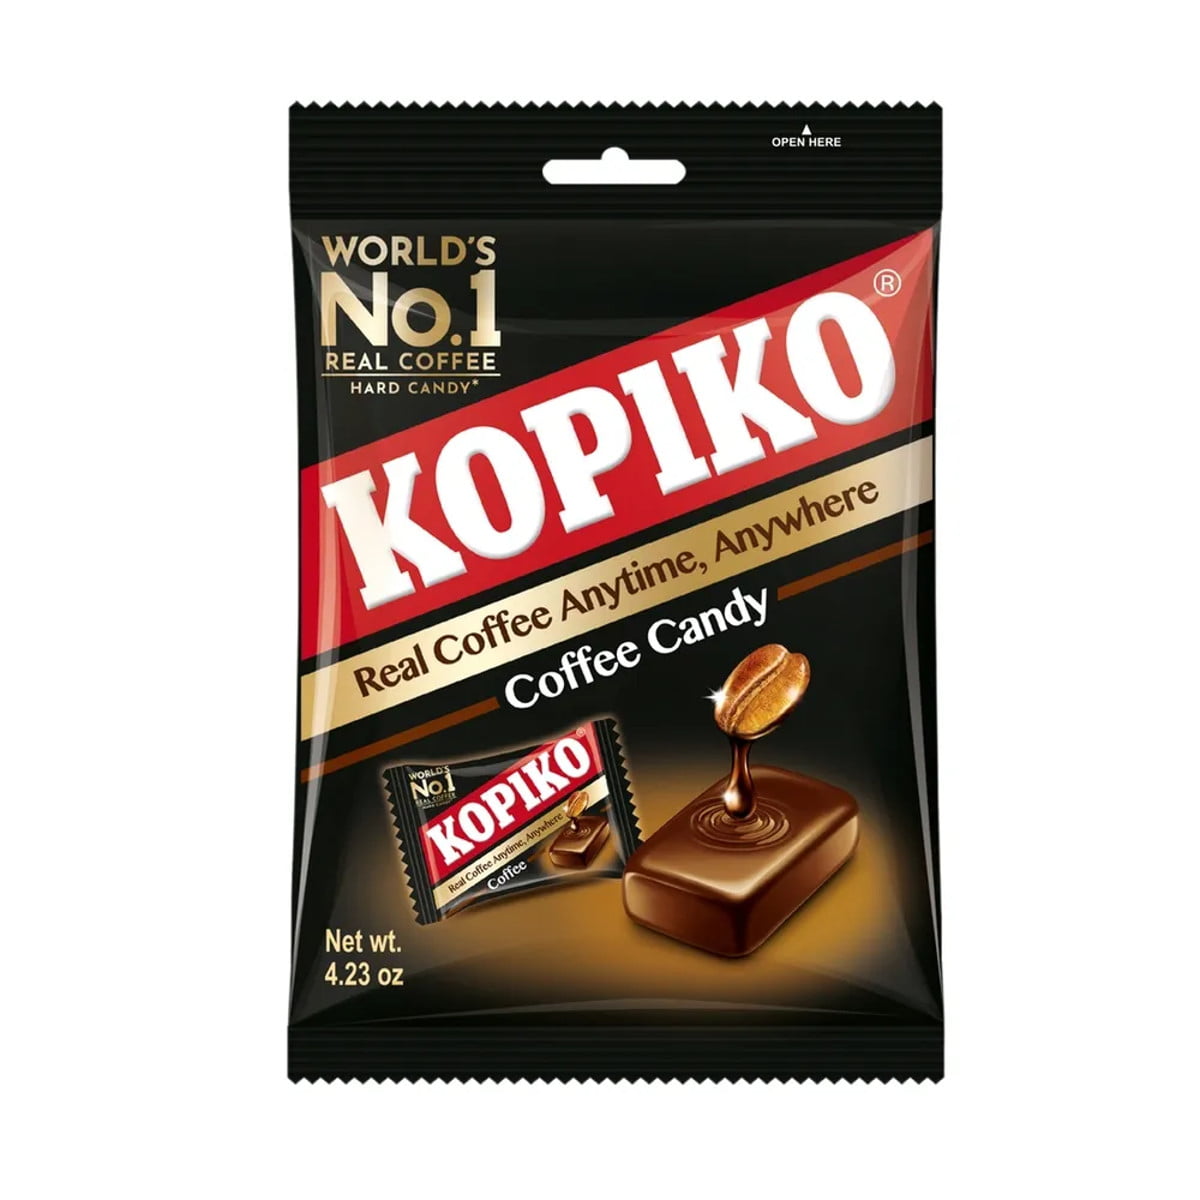 Bala Japonesa de Café  Coffee Candy Kopiko - 120 gramas